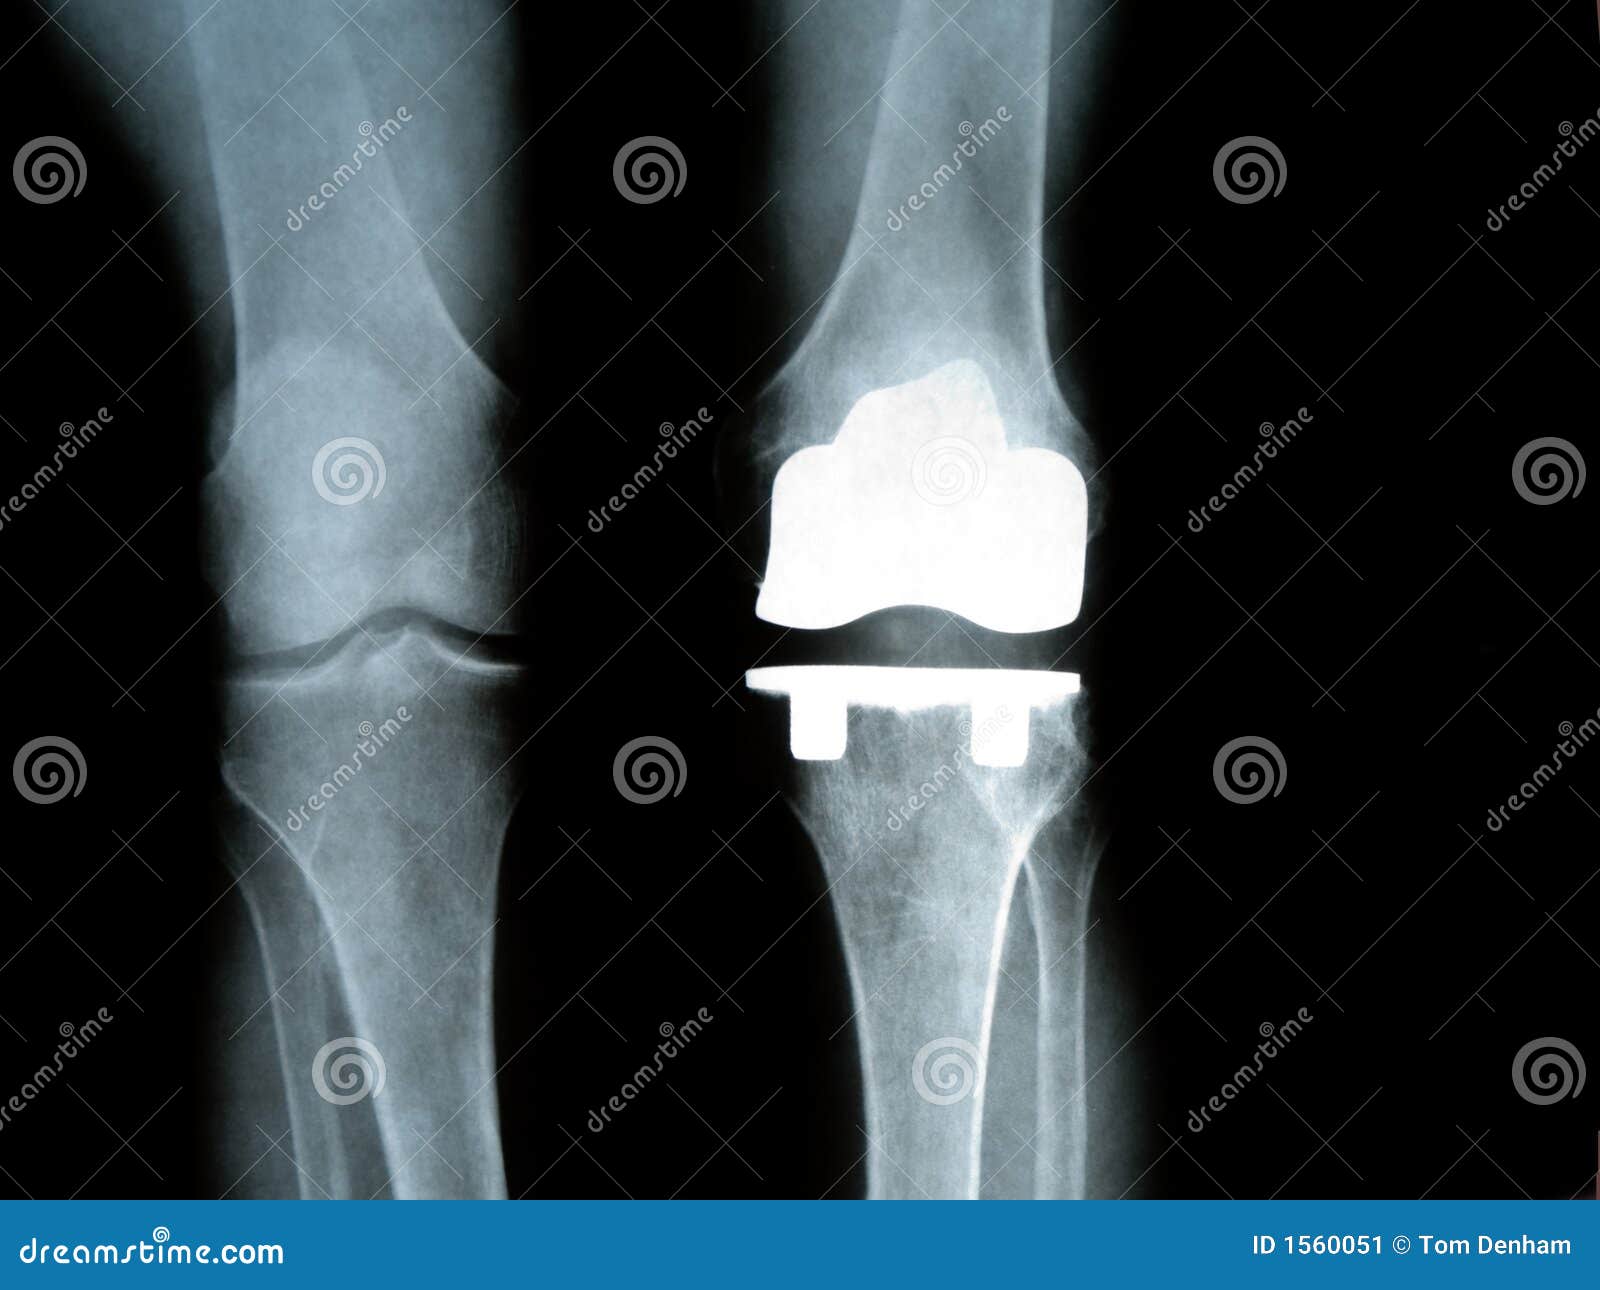 titanium knee